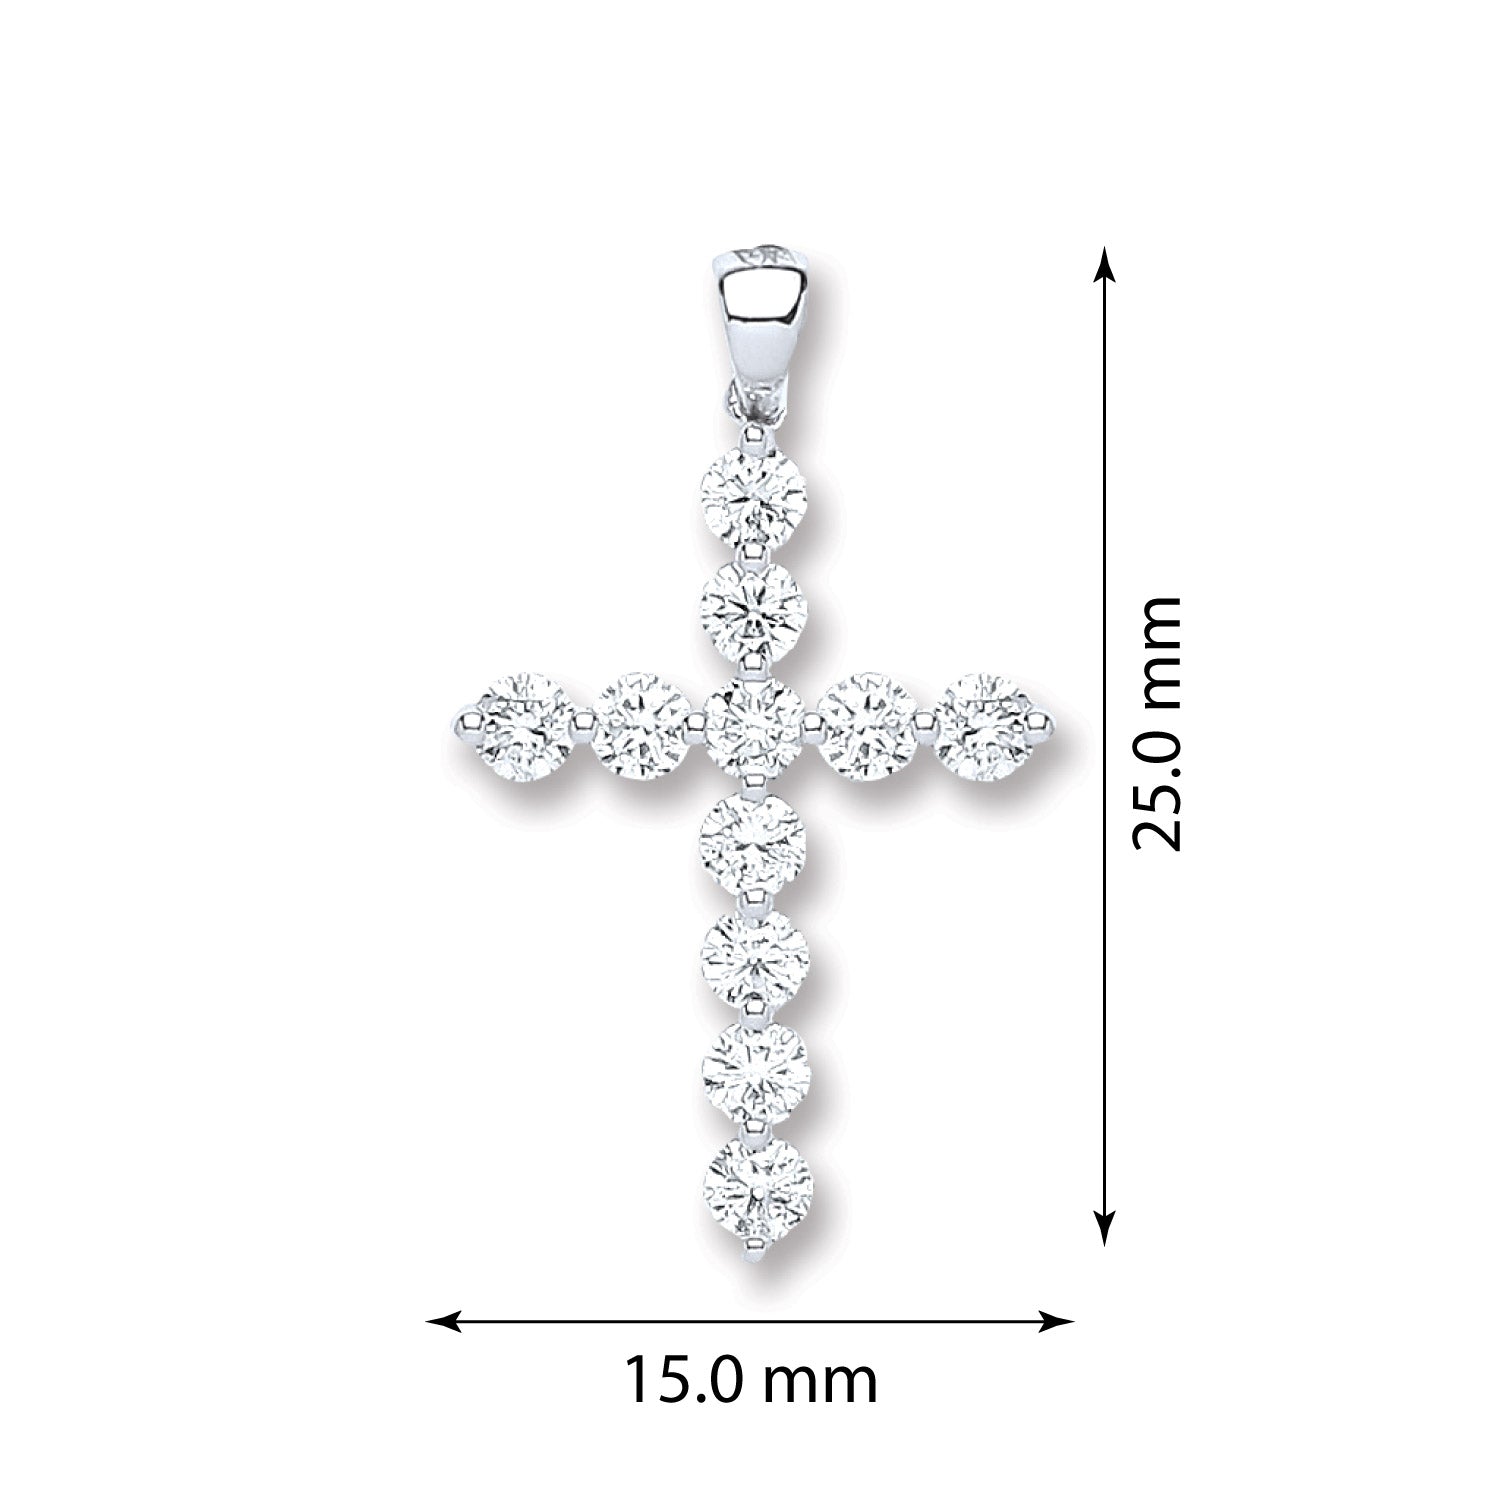 18ct White Gold Diamond Fancy Cross - FJewellery